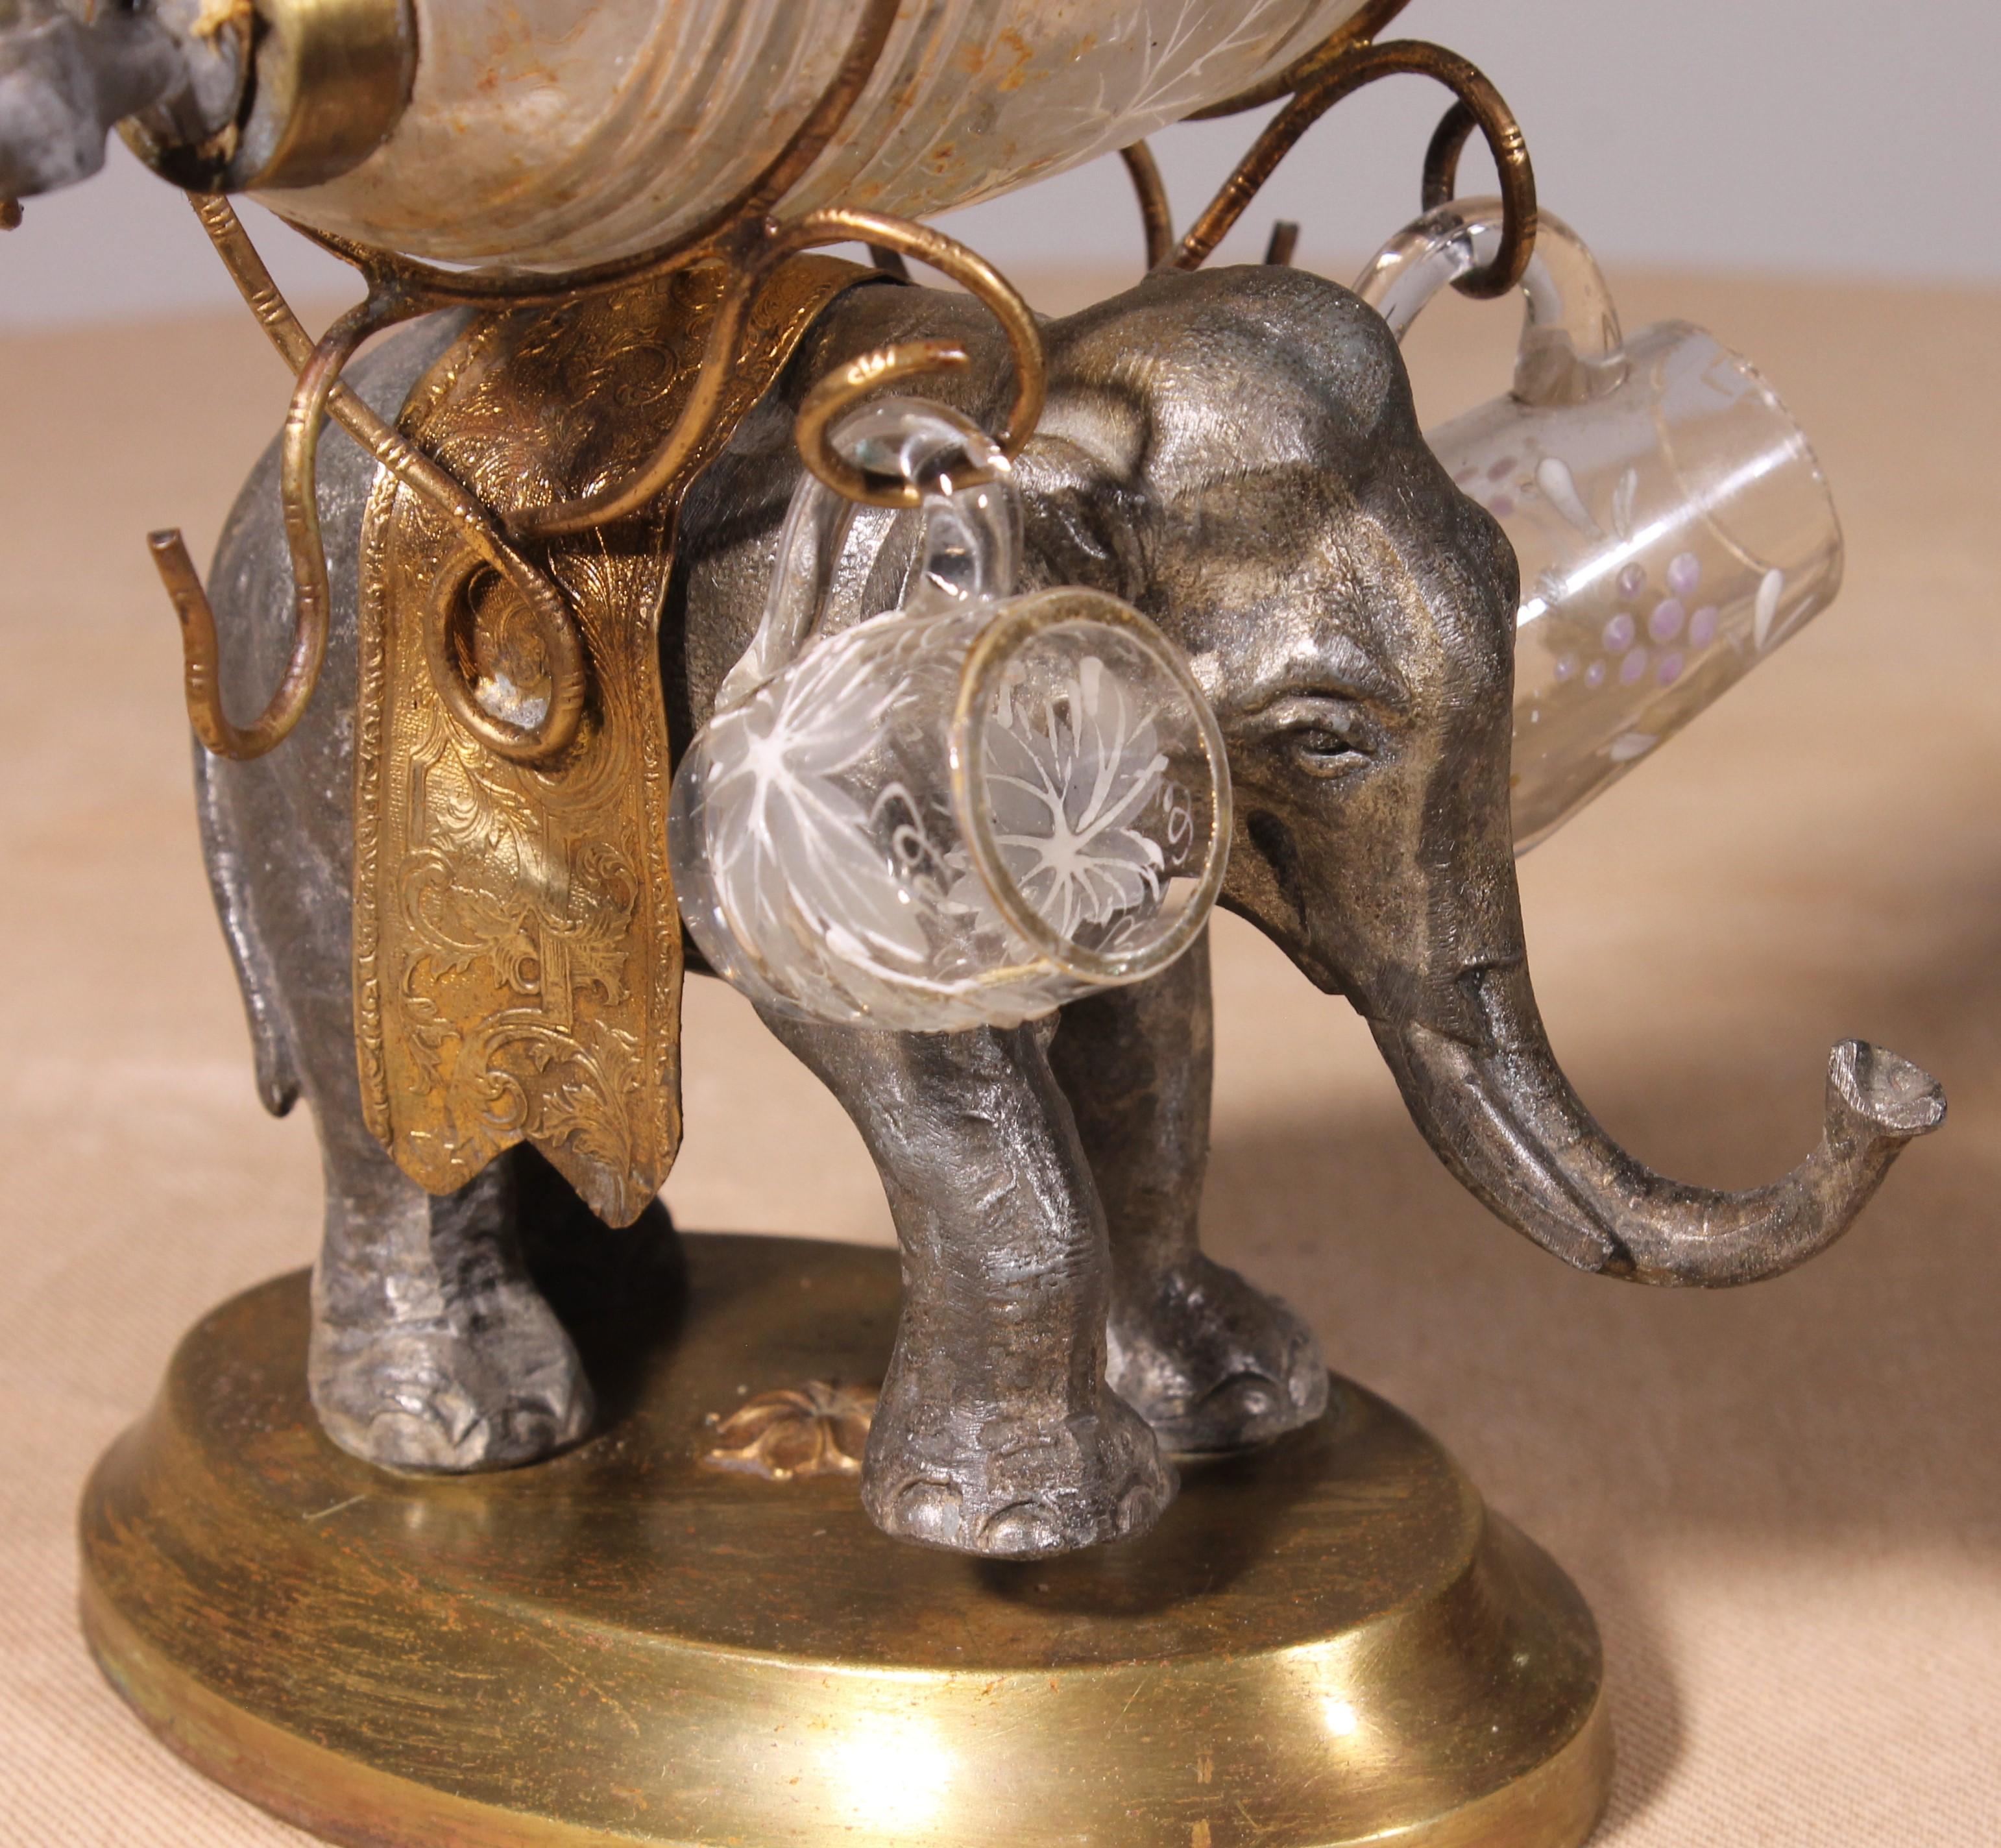 Likörkeller mit einem Elefanten aus Zinn, Messing und emaillierten Gläsern aus der Zeit Napoleons III.

Schöner Likörkeller mit einem sehr schönen Elefanten, verziert mit einem gemeißelten Messingumhang

Der Elefant wird von einem mit Weintrauben